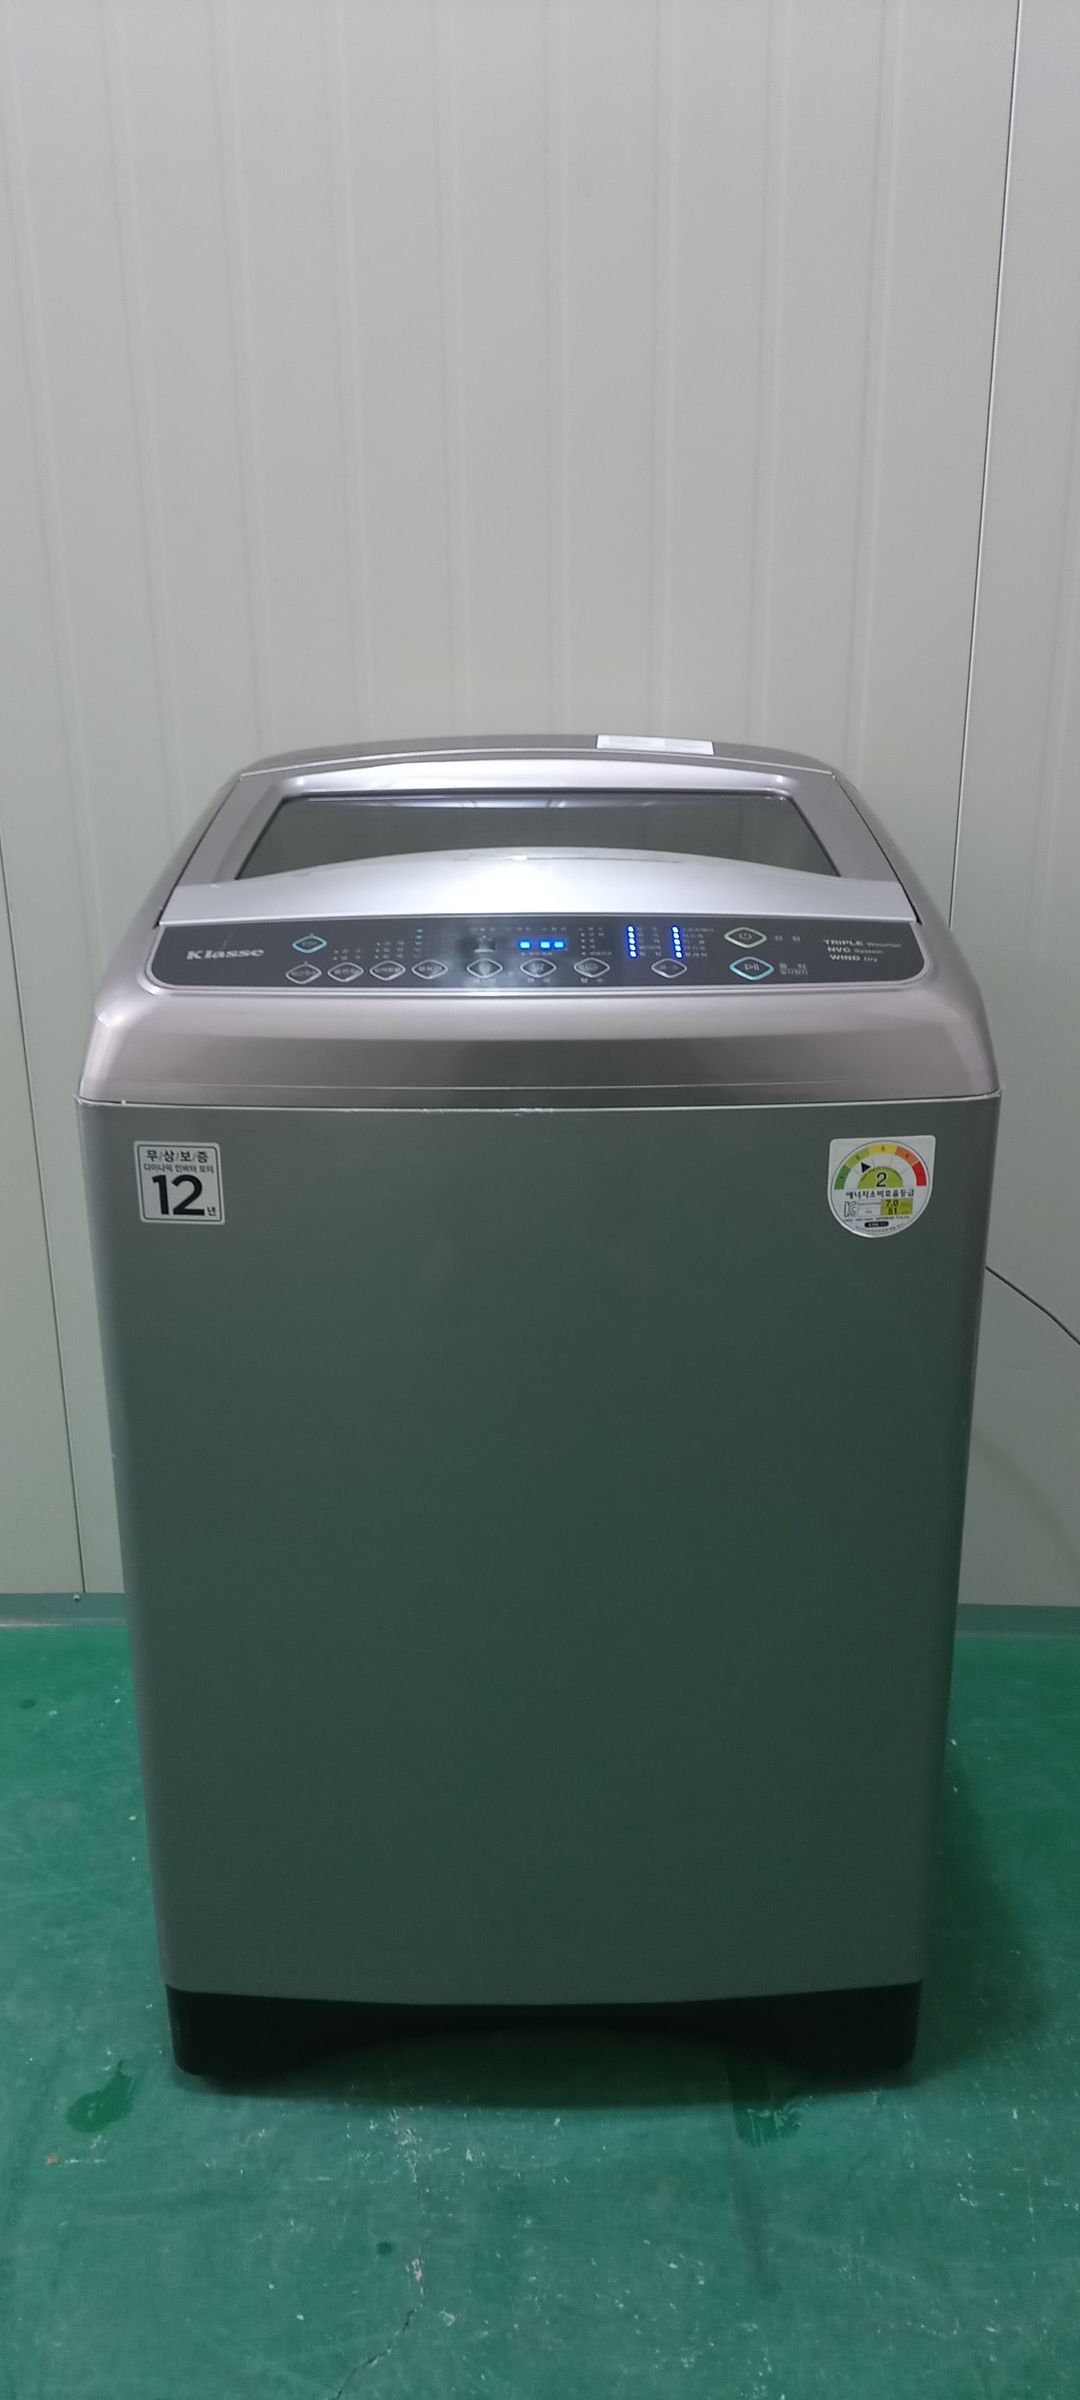 2394 클라쎄 17KG 통돌이세탁기(메탈실버)